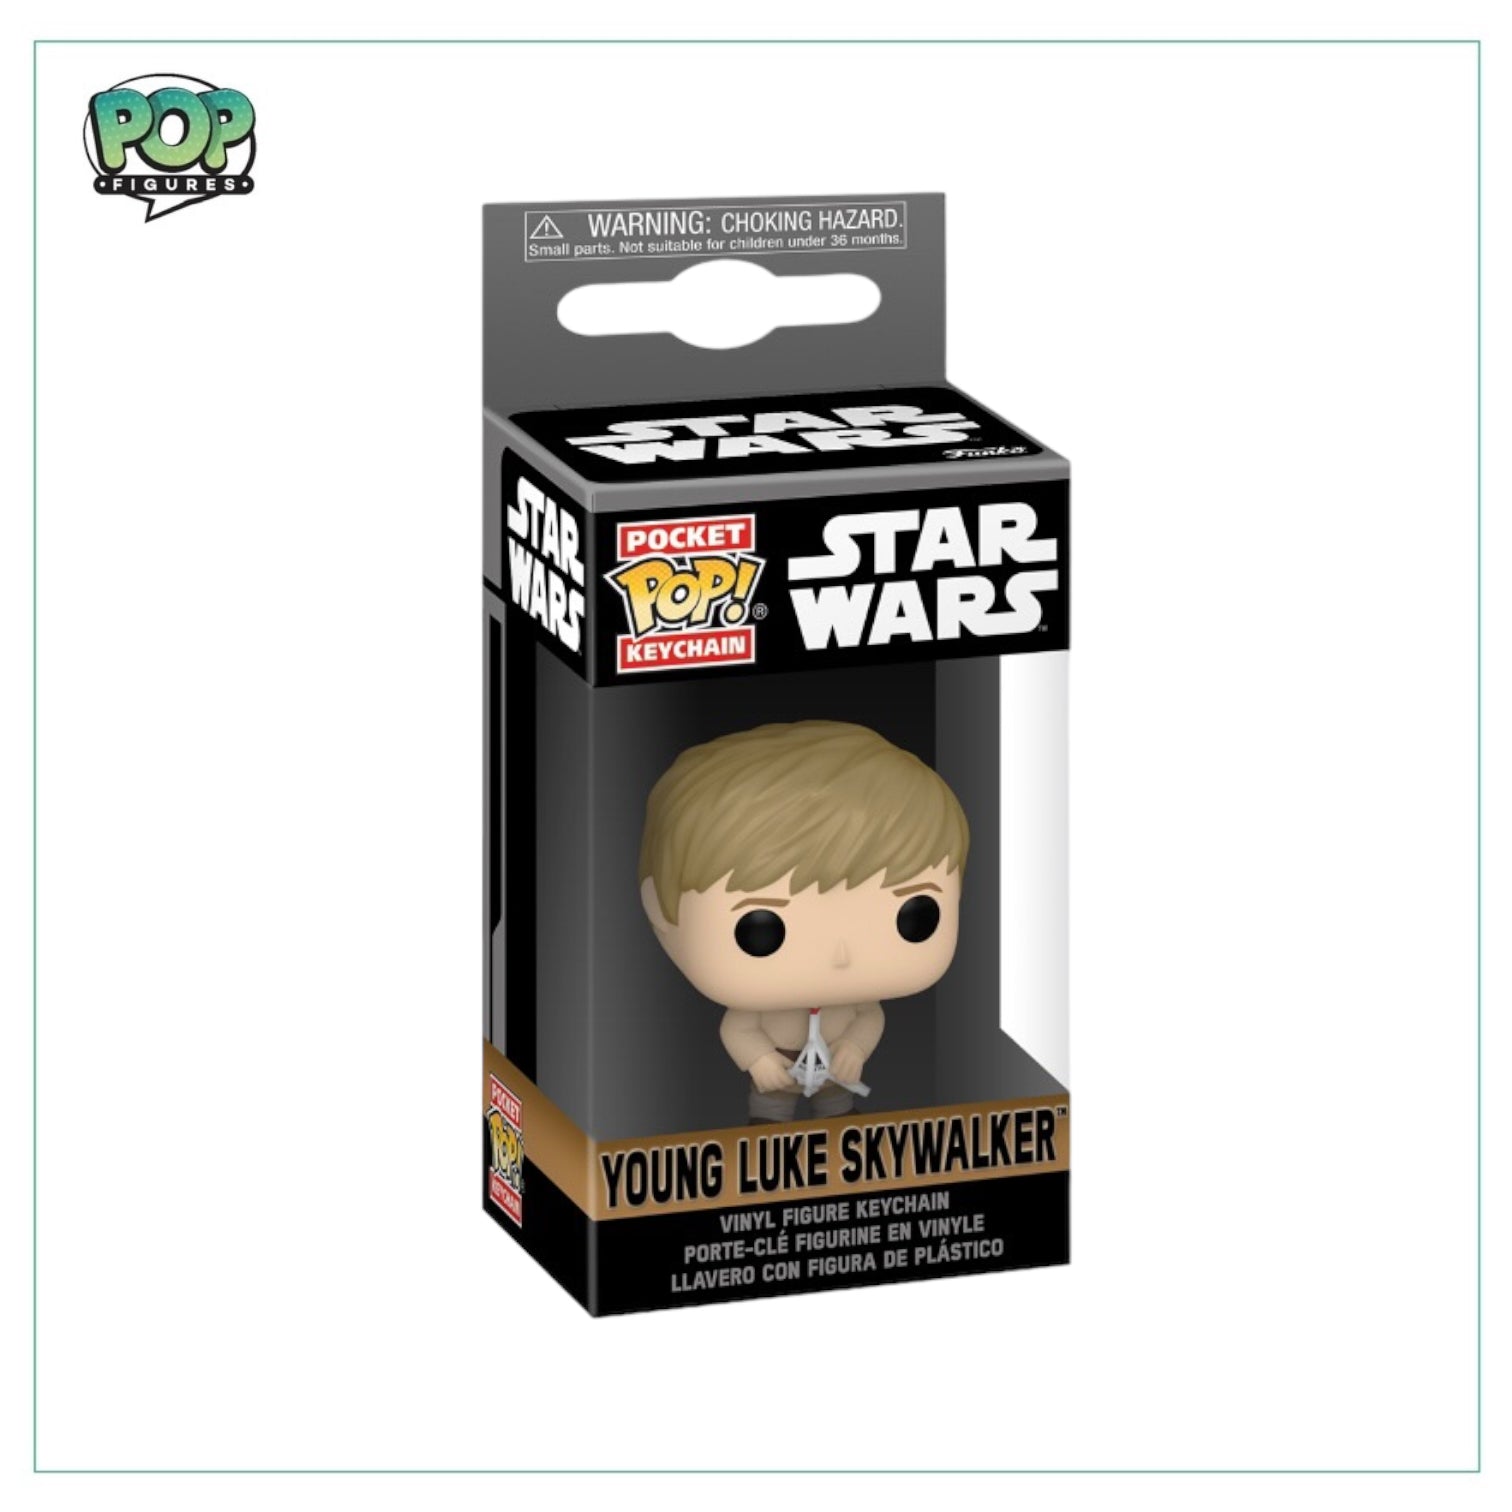 Young Luke Skywalker Funko Pocket Pop! Keychain - Star Wars